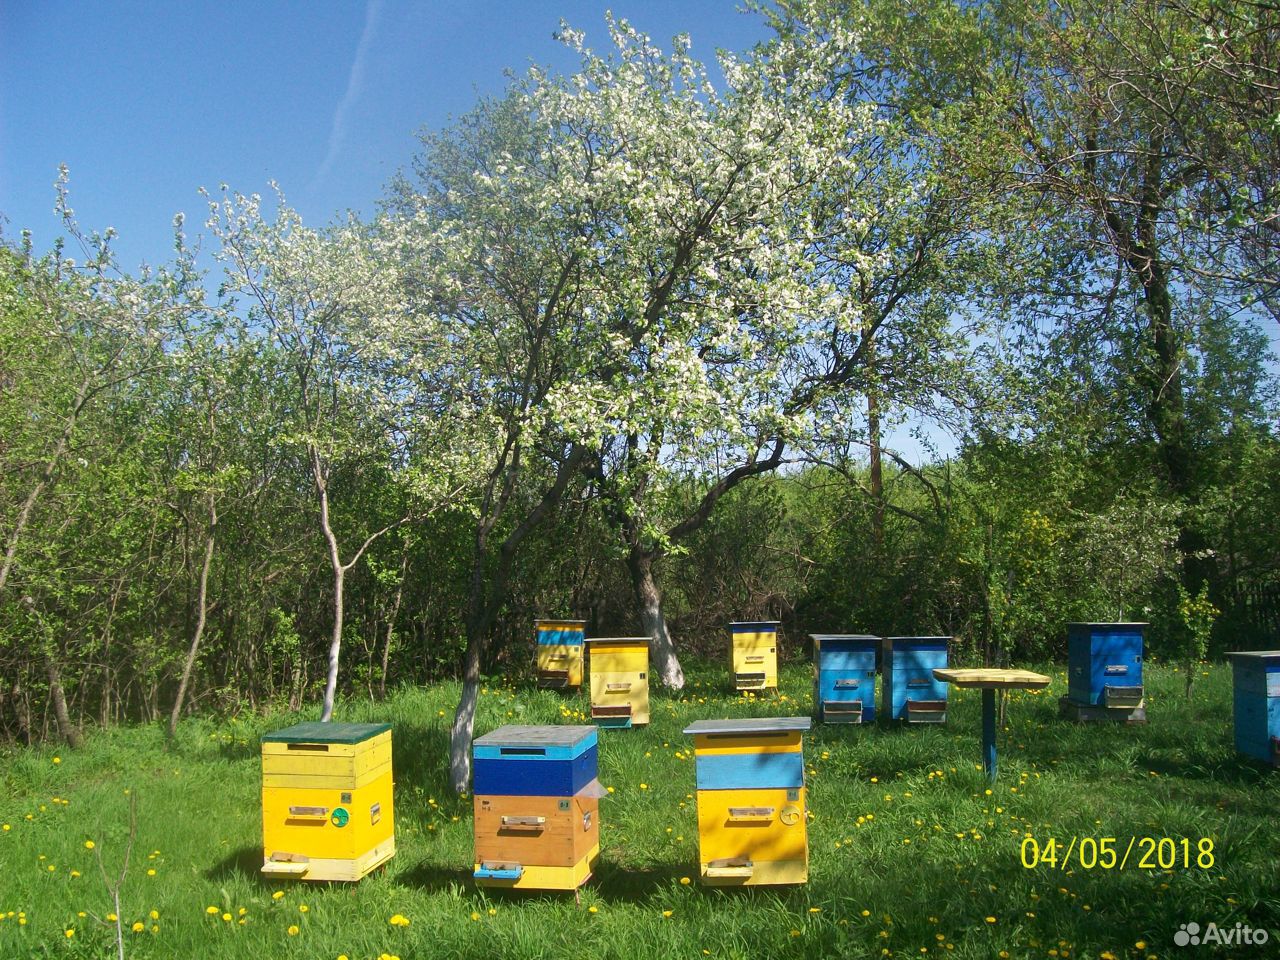 Купить пчелосемьи в воронежской области 2024 году. Купитьпчолворловско.об.авито.. Авито Саратовская область продажа пчел.